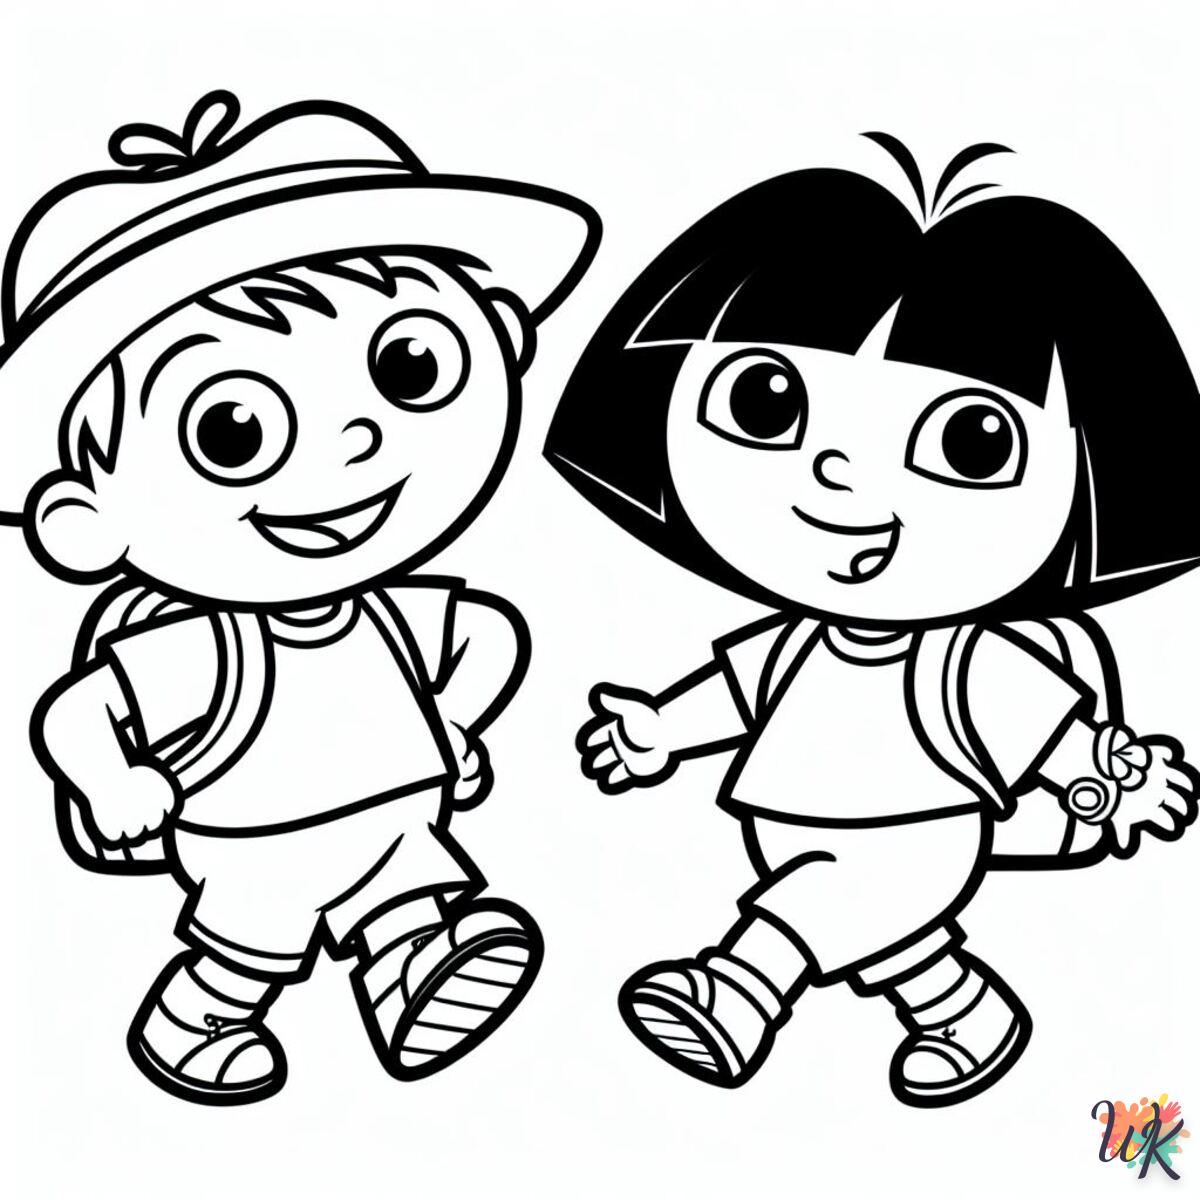 Coloriages pour enfants : Marcus et Dora l’exploratrice